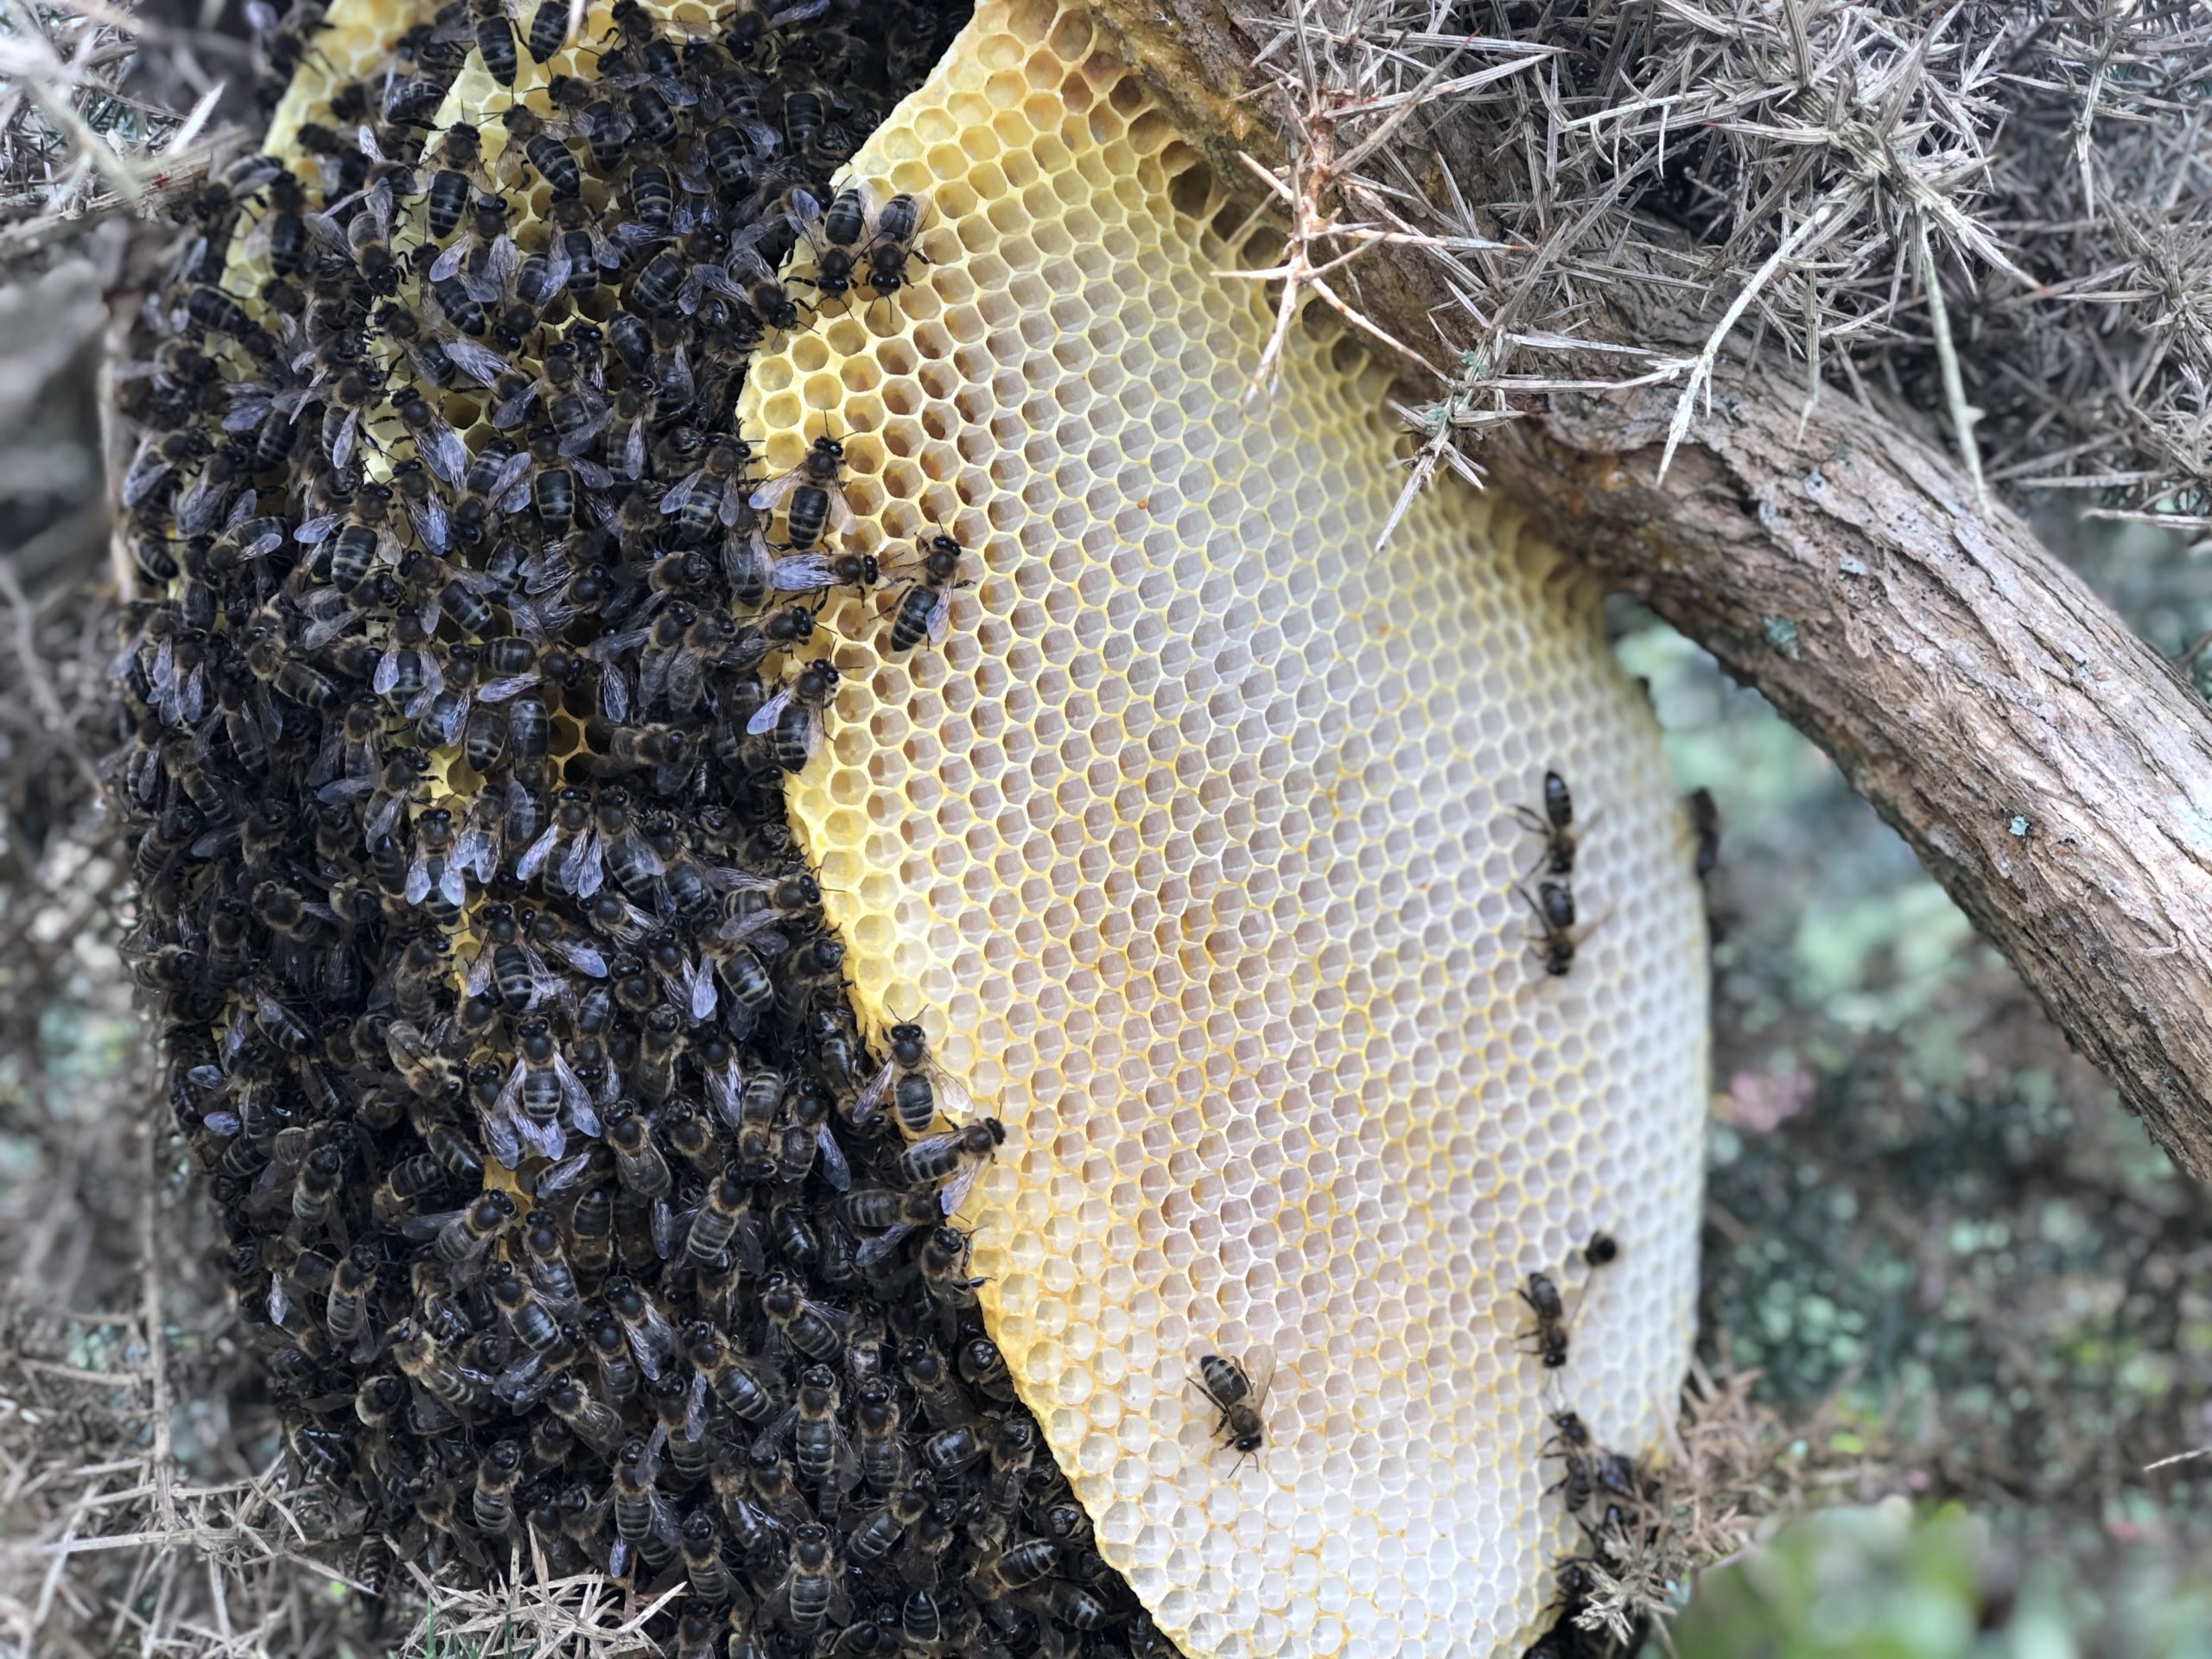 Les abeilles mellifères à l'état sauvage toujours très peu étudiées